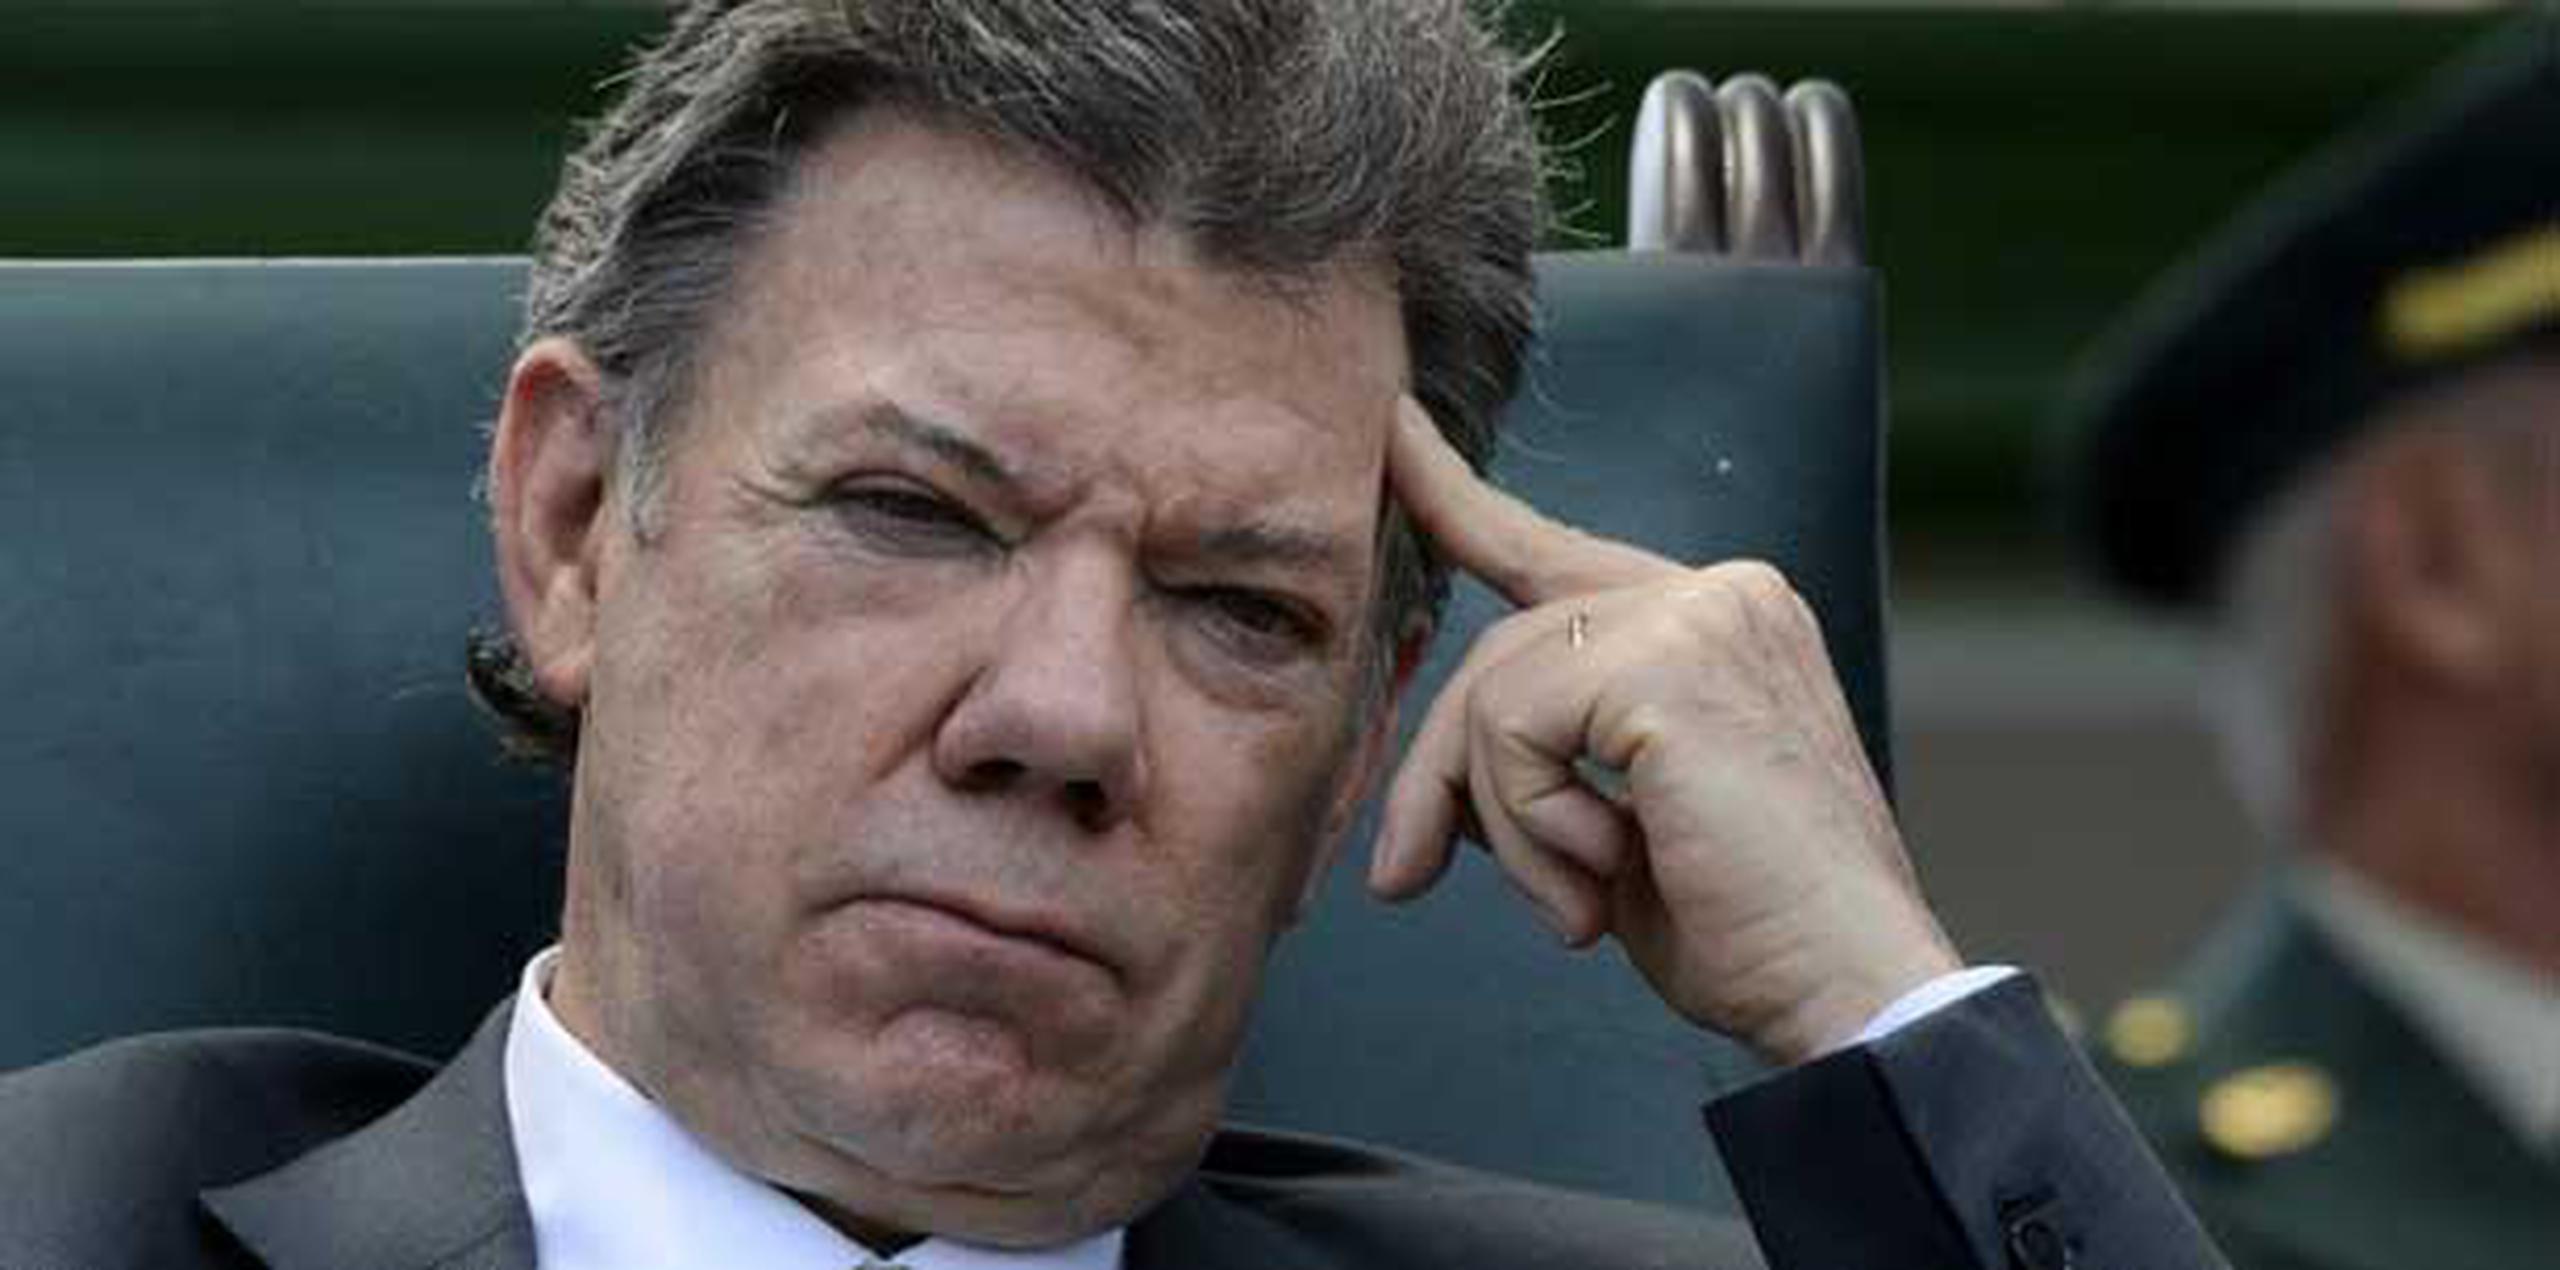 El presidente de Colombia, Juan Manuel Santos, se orinó mientras anunciaba su intención de aspirar a la reelección.    (AFP/Archivo/Luis Acosta)